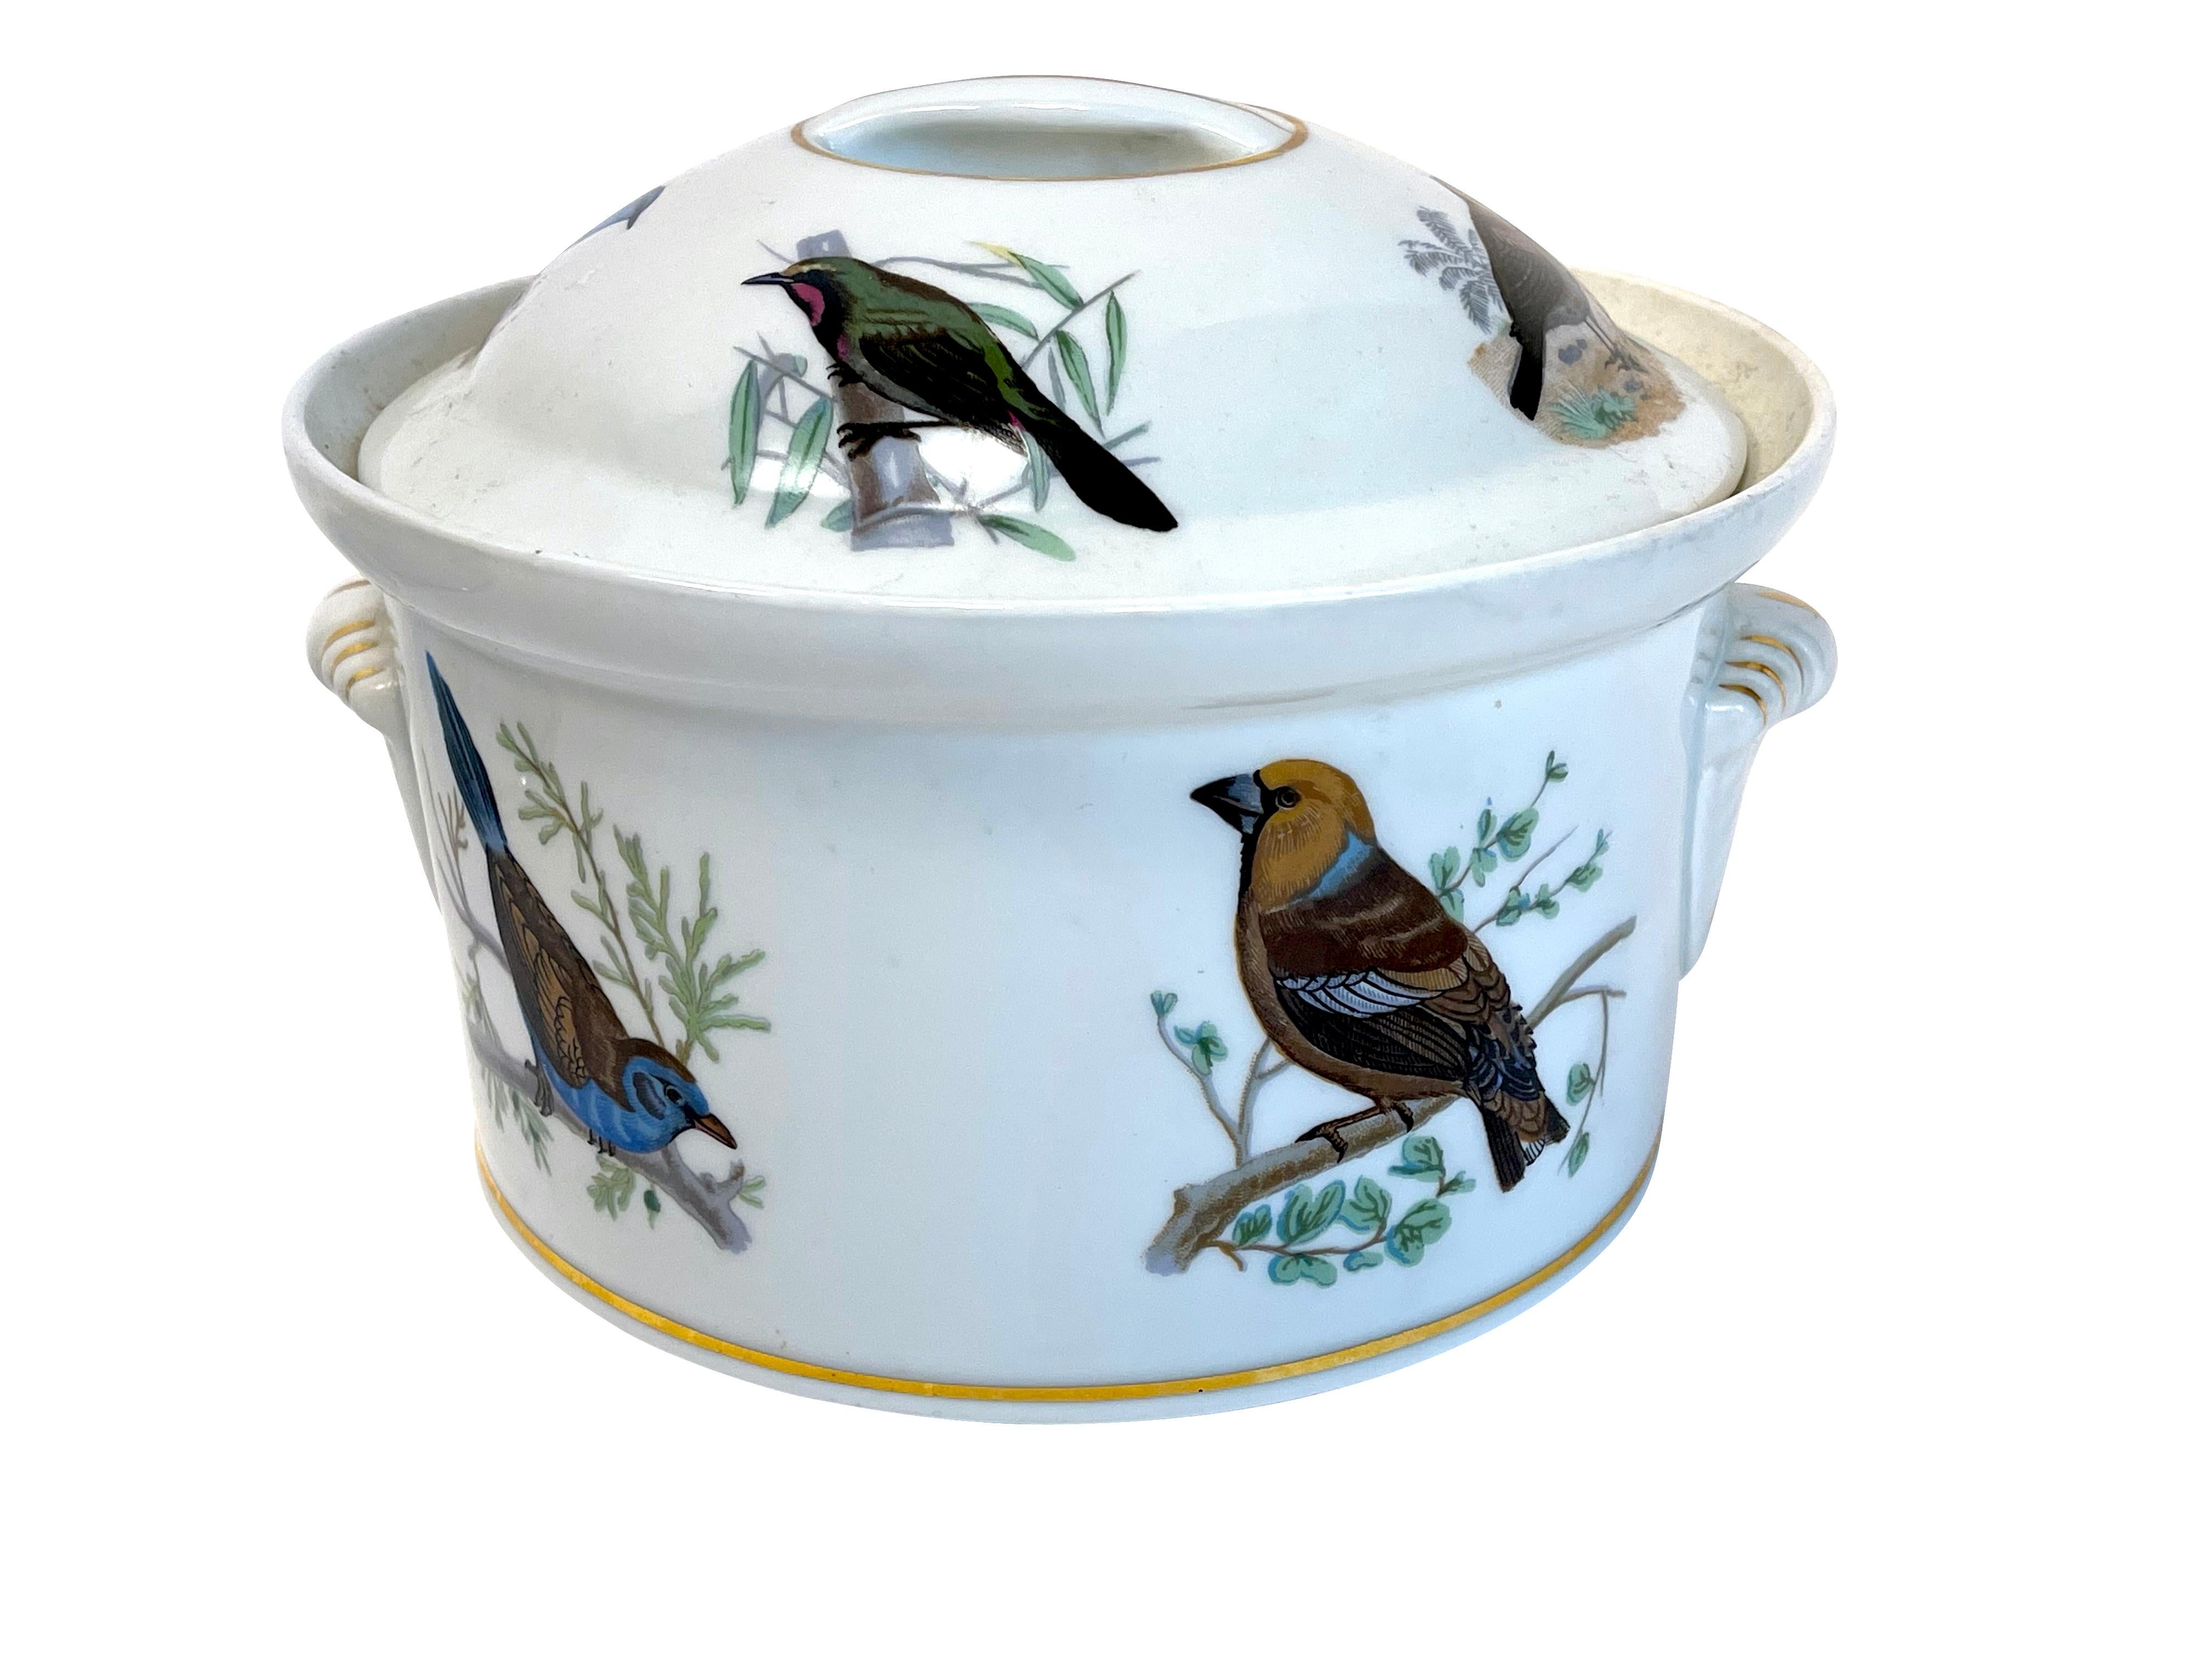 Le Faune Birds Lourioux Fire Proof French Porcelain Casseroles  For Sale 1